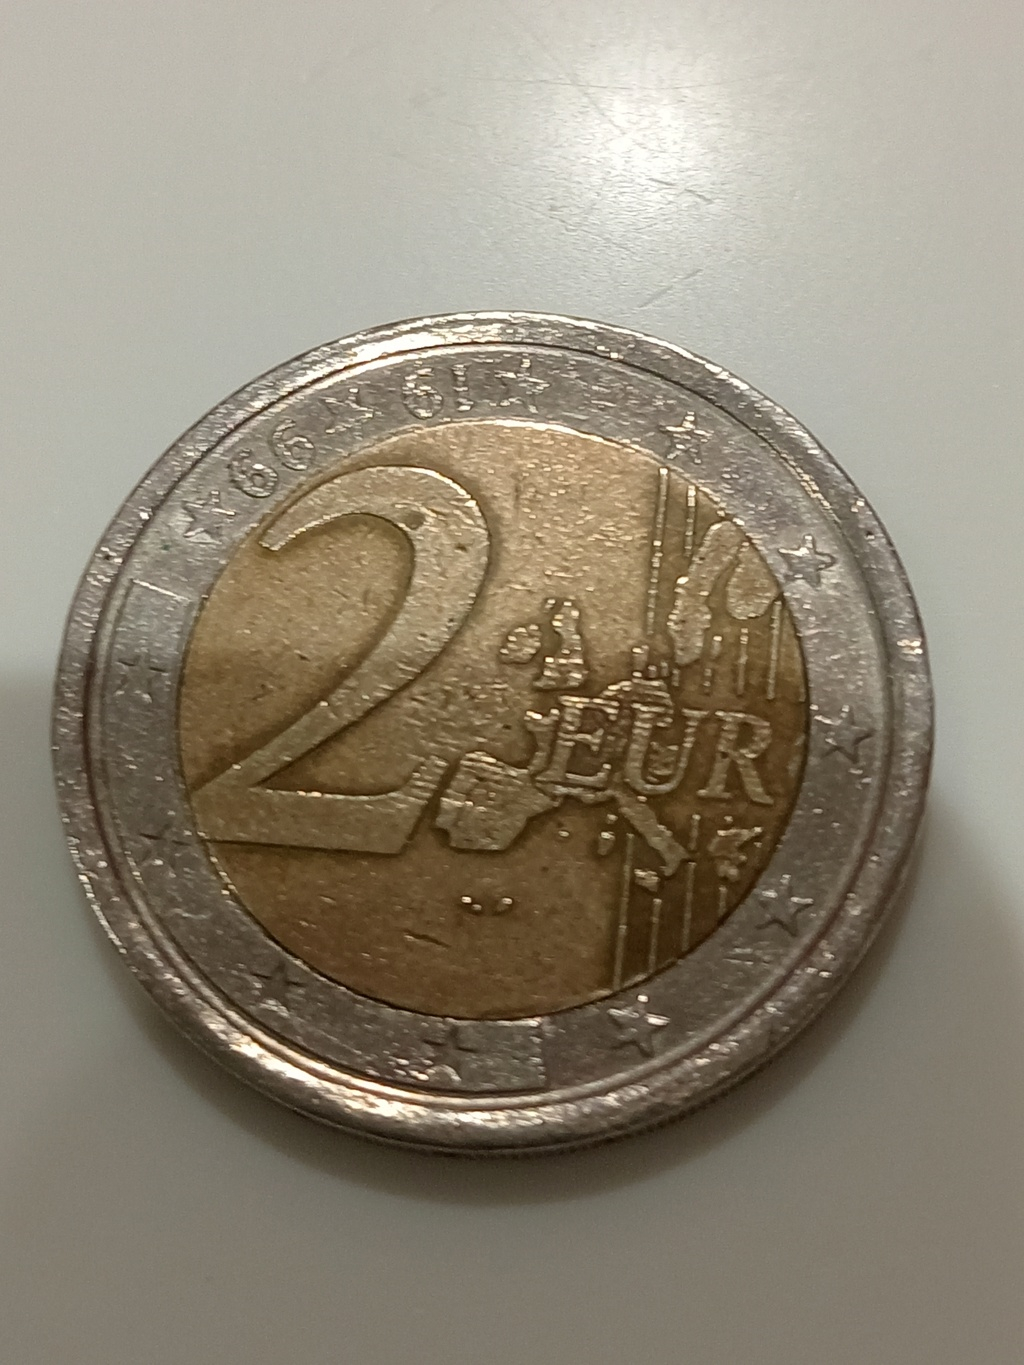 100.000 monedas de euro falsas circulando 17162910